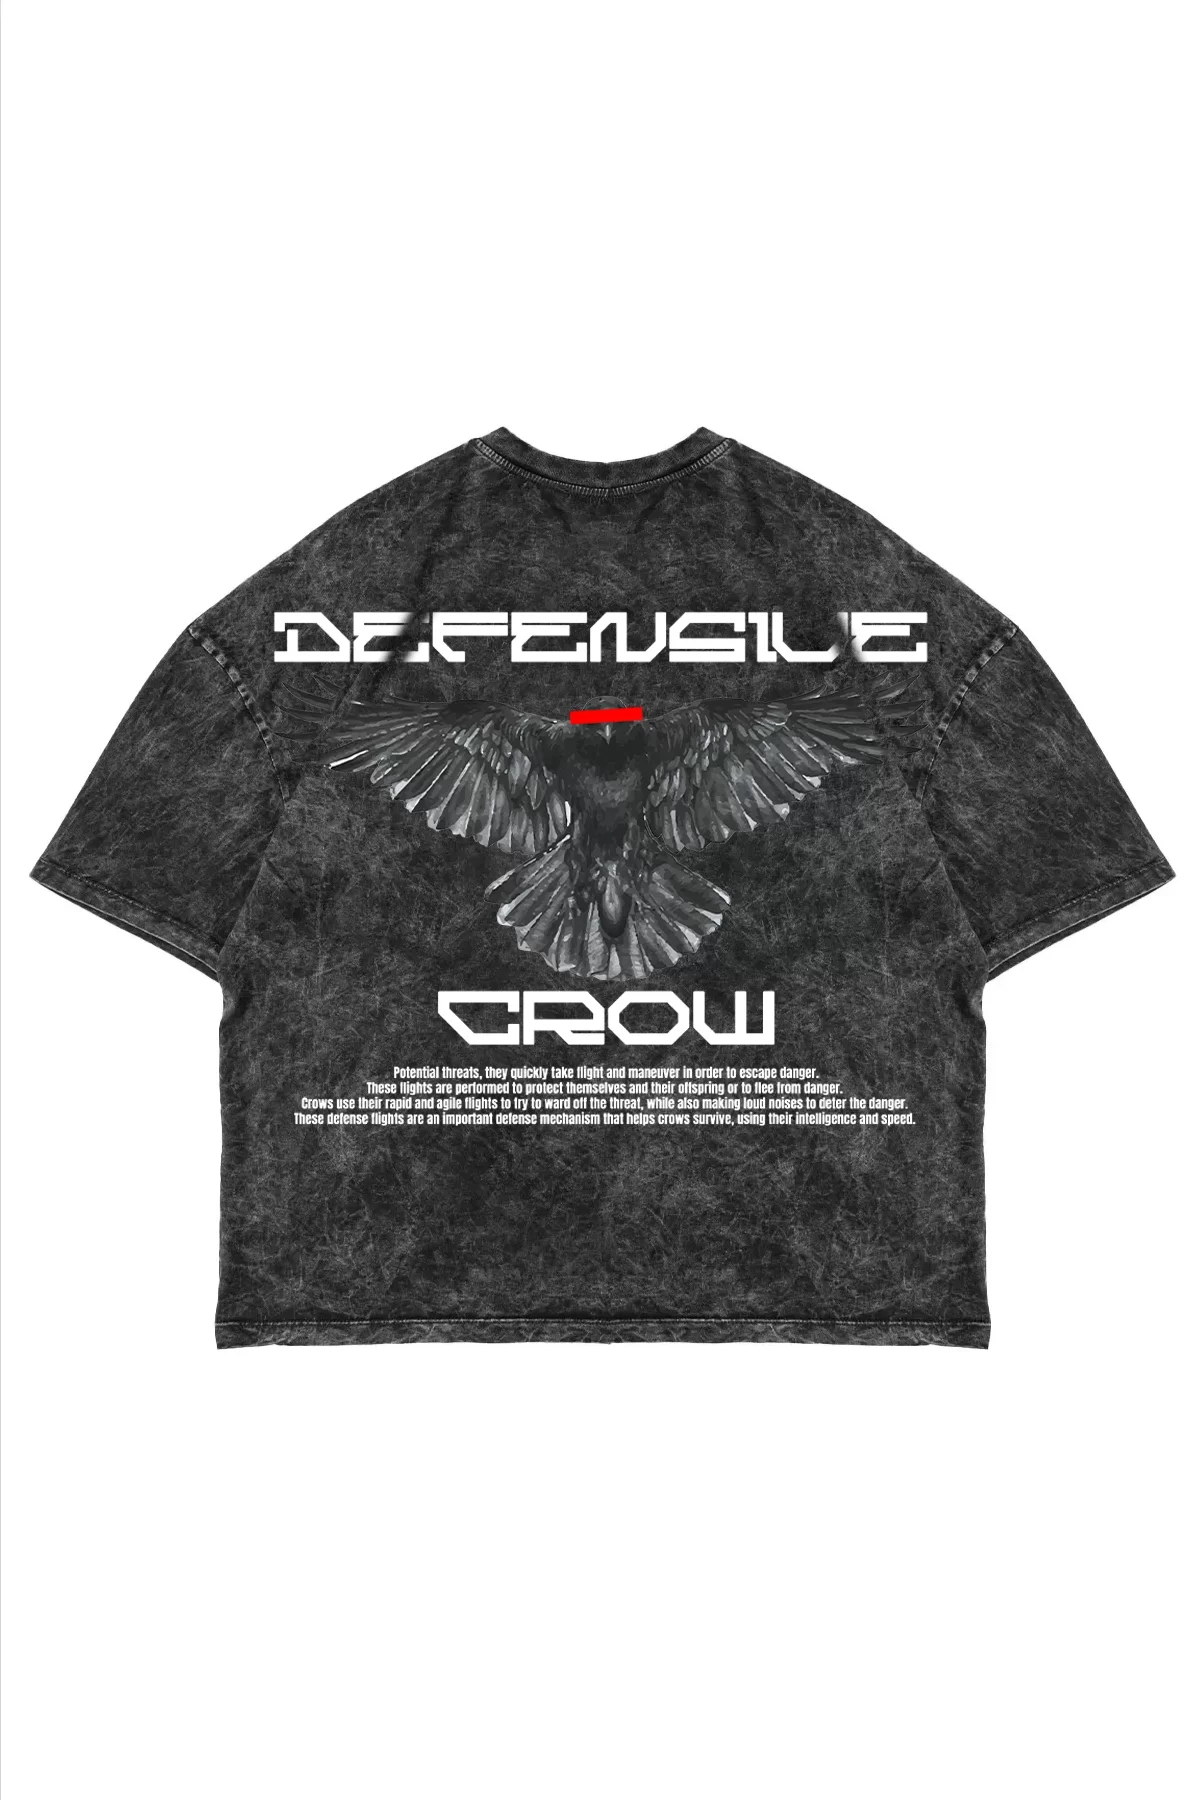 Defensive Crow Baskılı Oversize Unisex Yıkamalı Siyah Tshirt